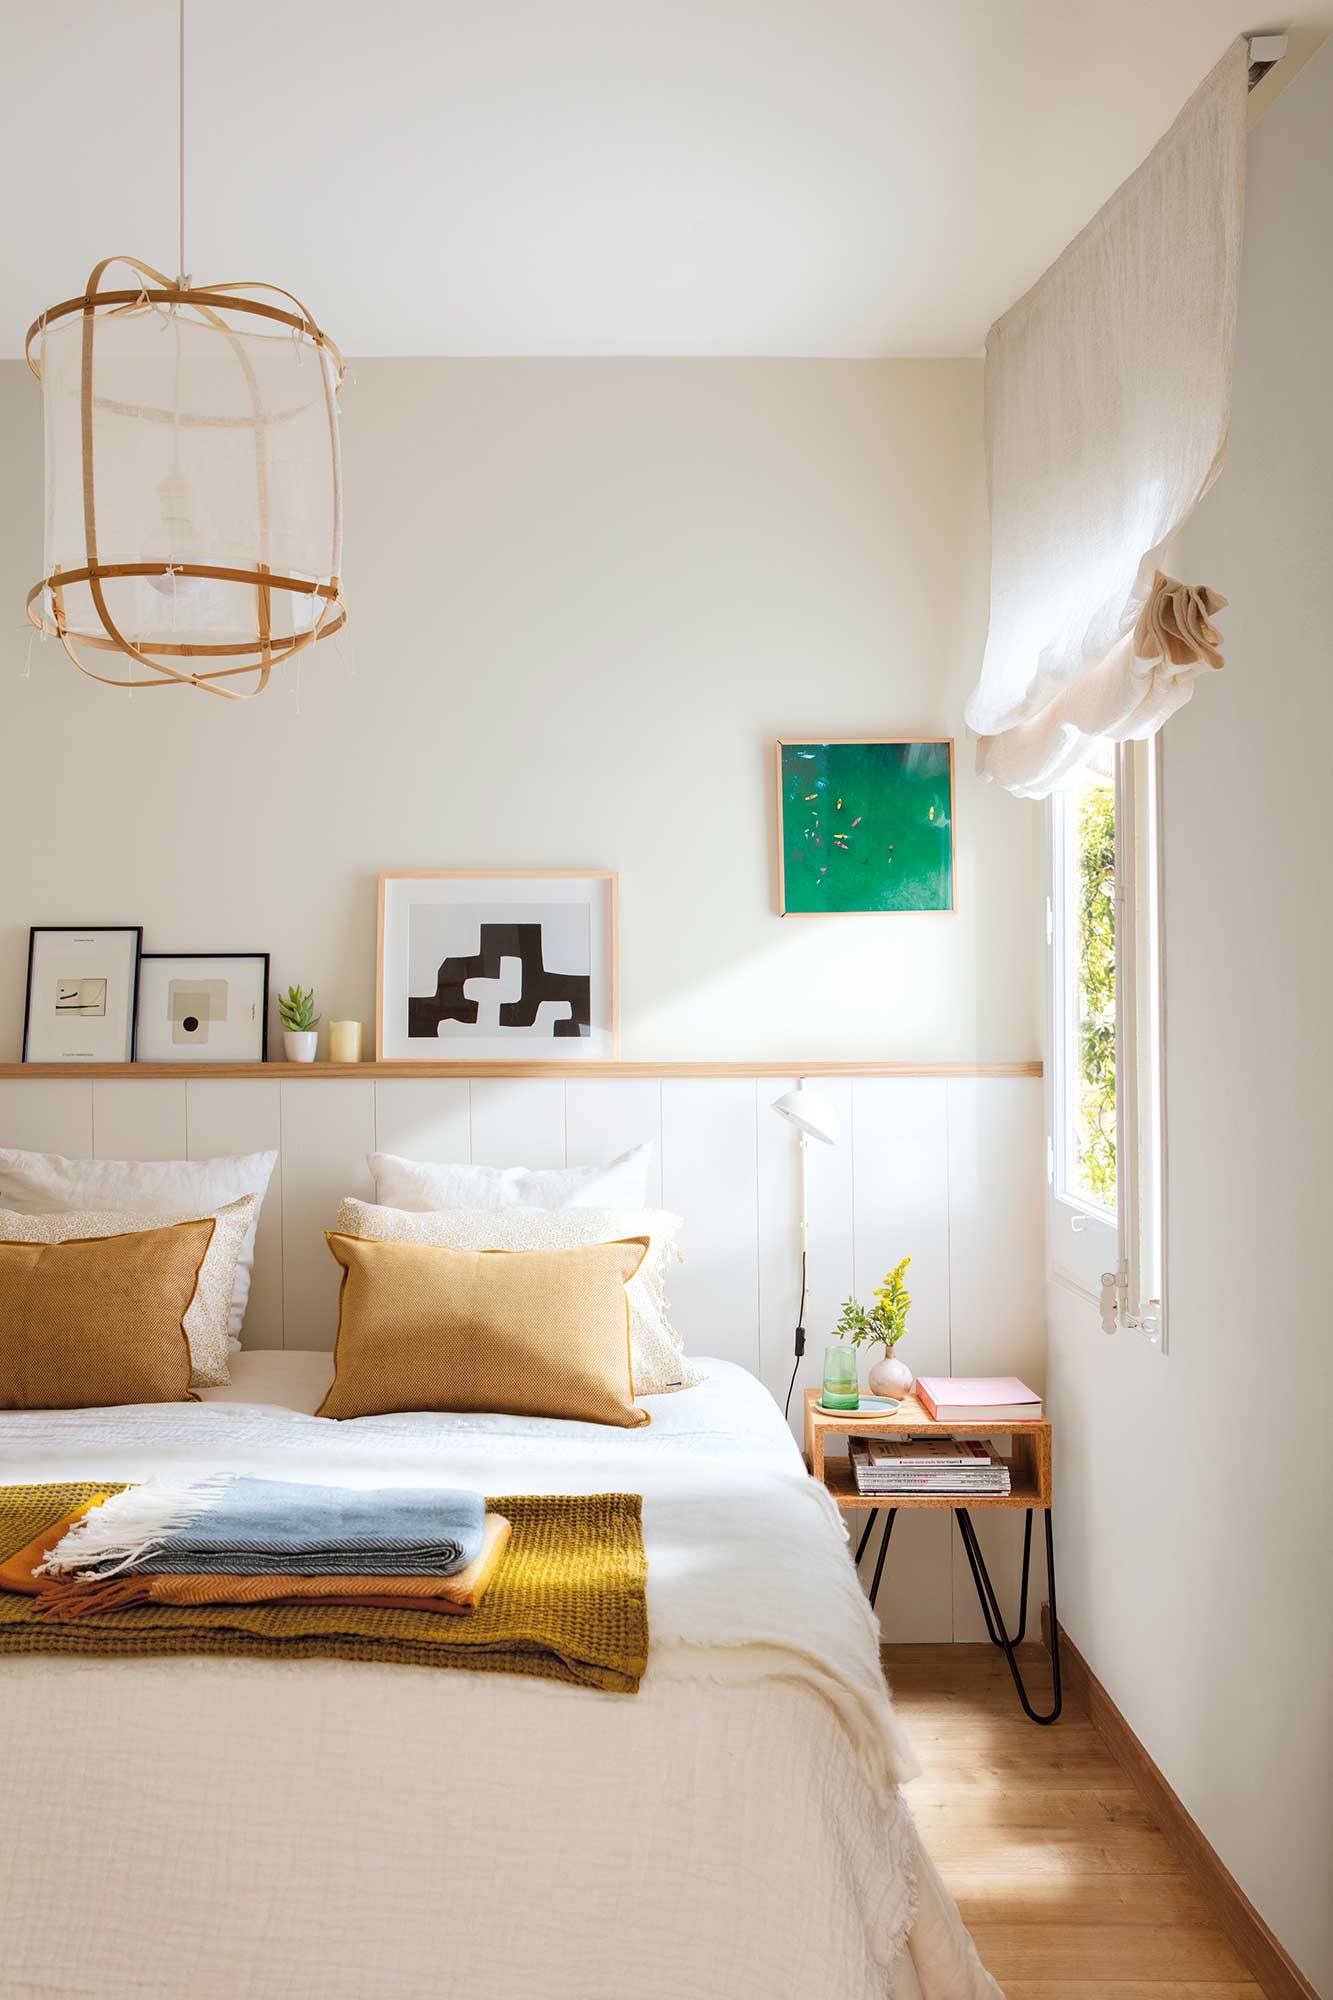 Dormitorio pequeño decorado en blanco con muebles de madera.